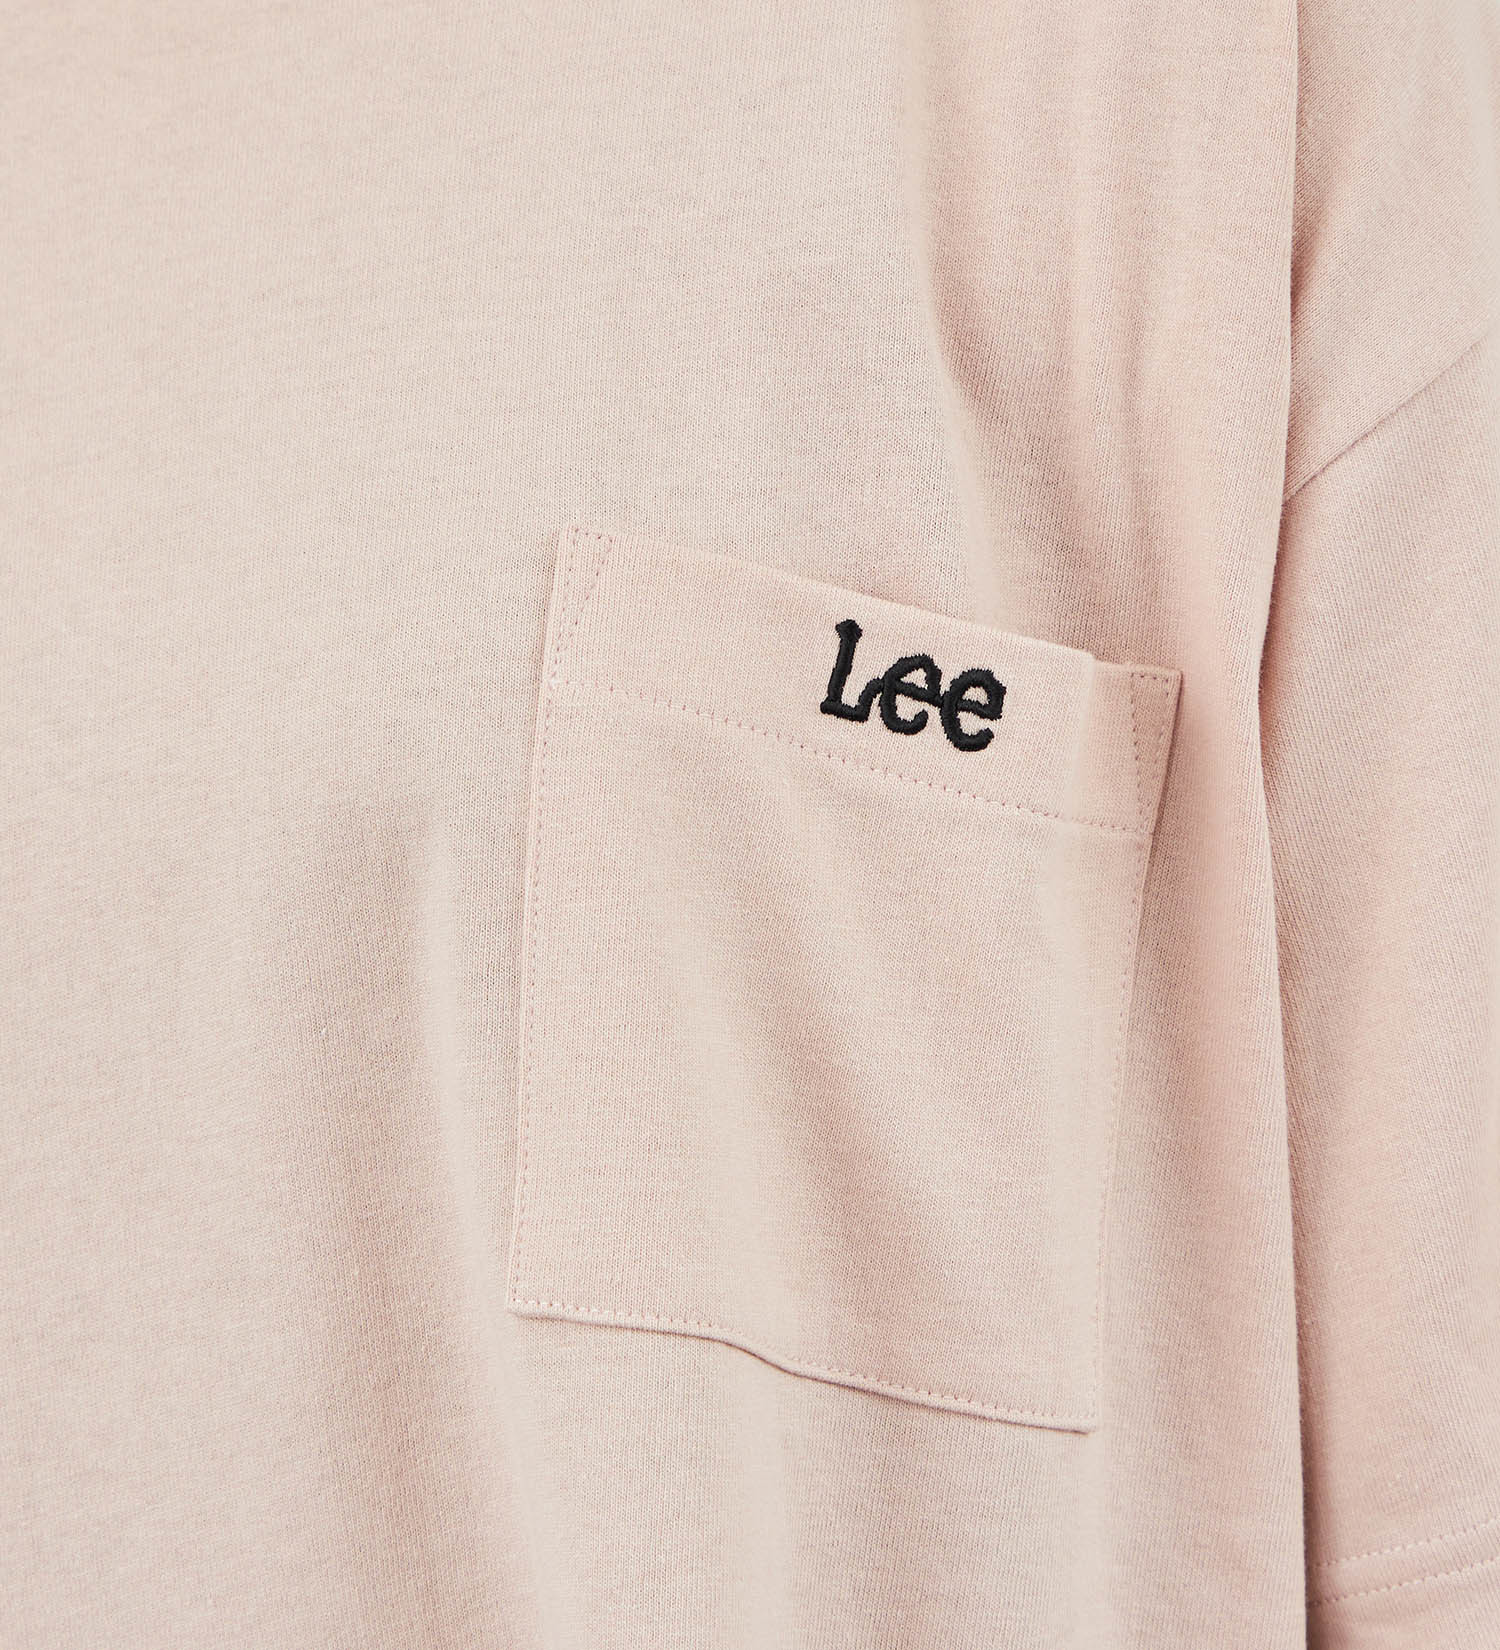 Lee(リー)の【SUMMER SALE】Leeロゴポケット刺繍Tシャツ|トップス/Tシャツ/カットソー/メンズ|ピンク